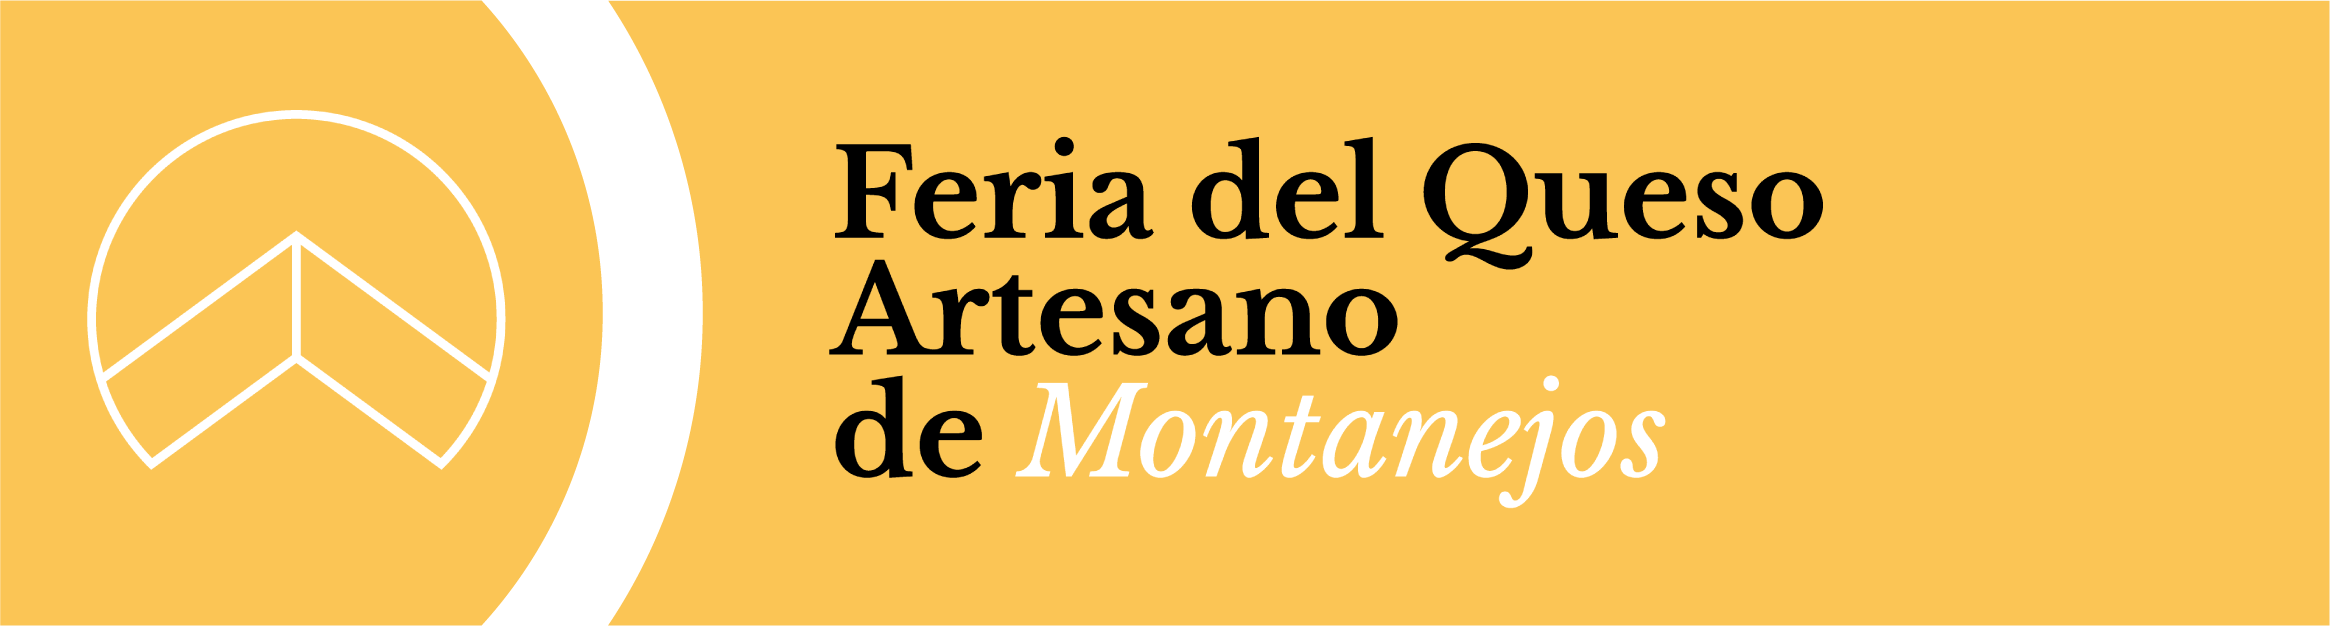 Feria del Queso Artesano de Montanejos